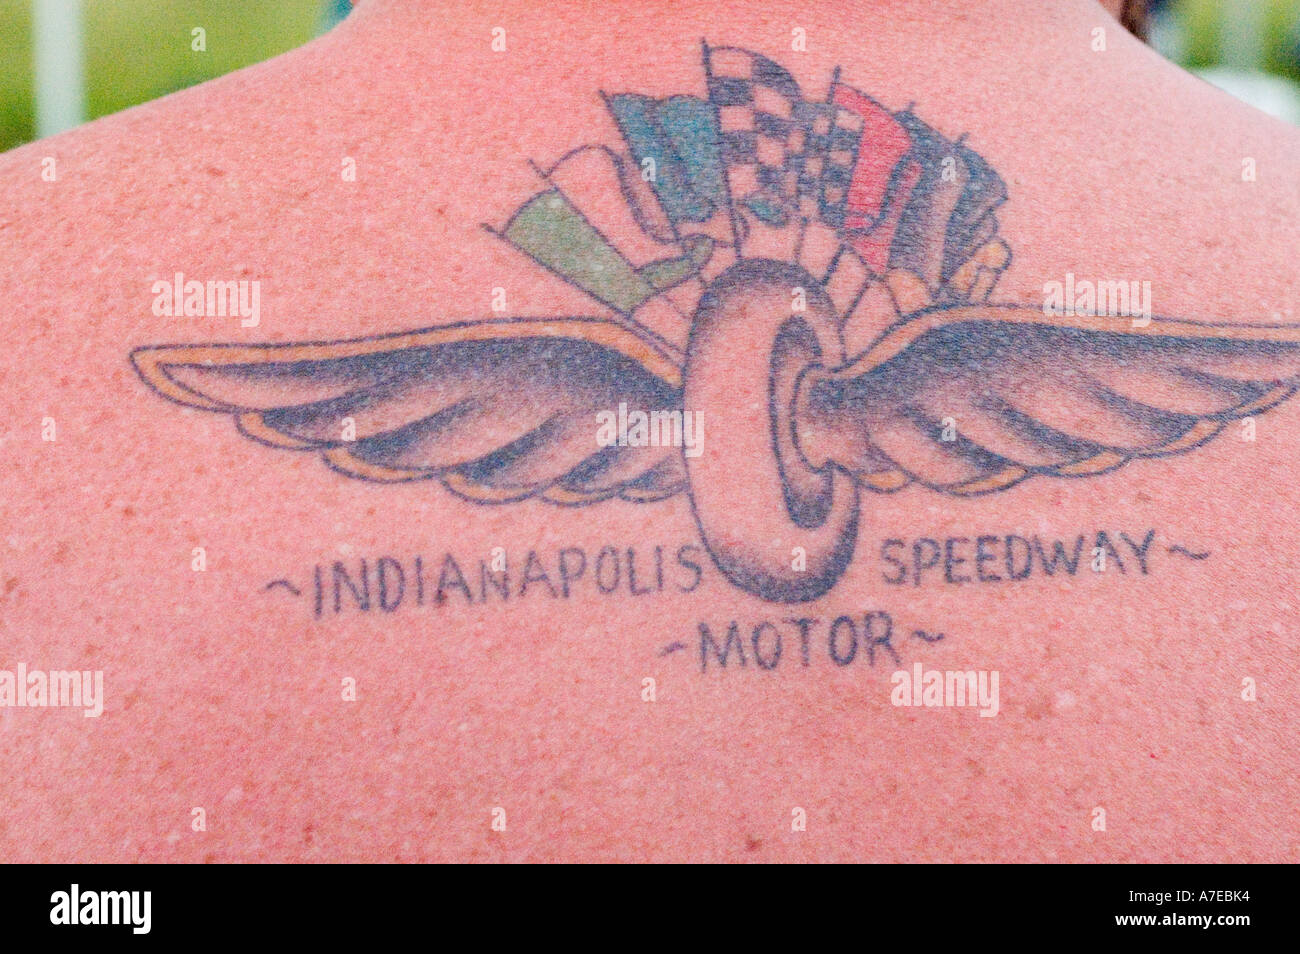 Indianapolis 500 tatuaje Fotografía de stock - Alamy